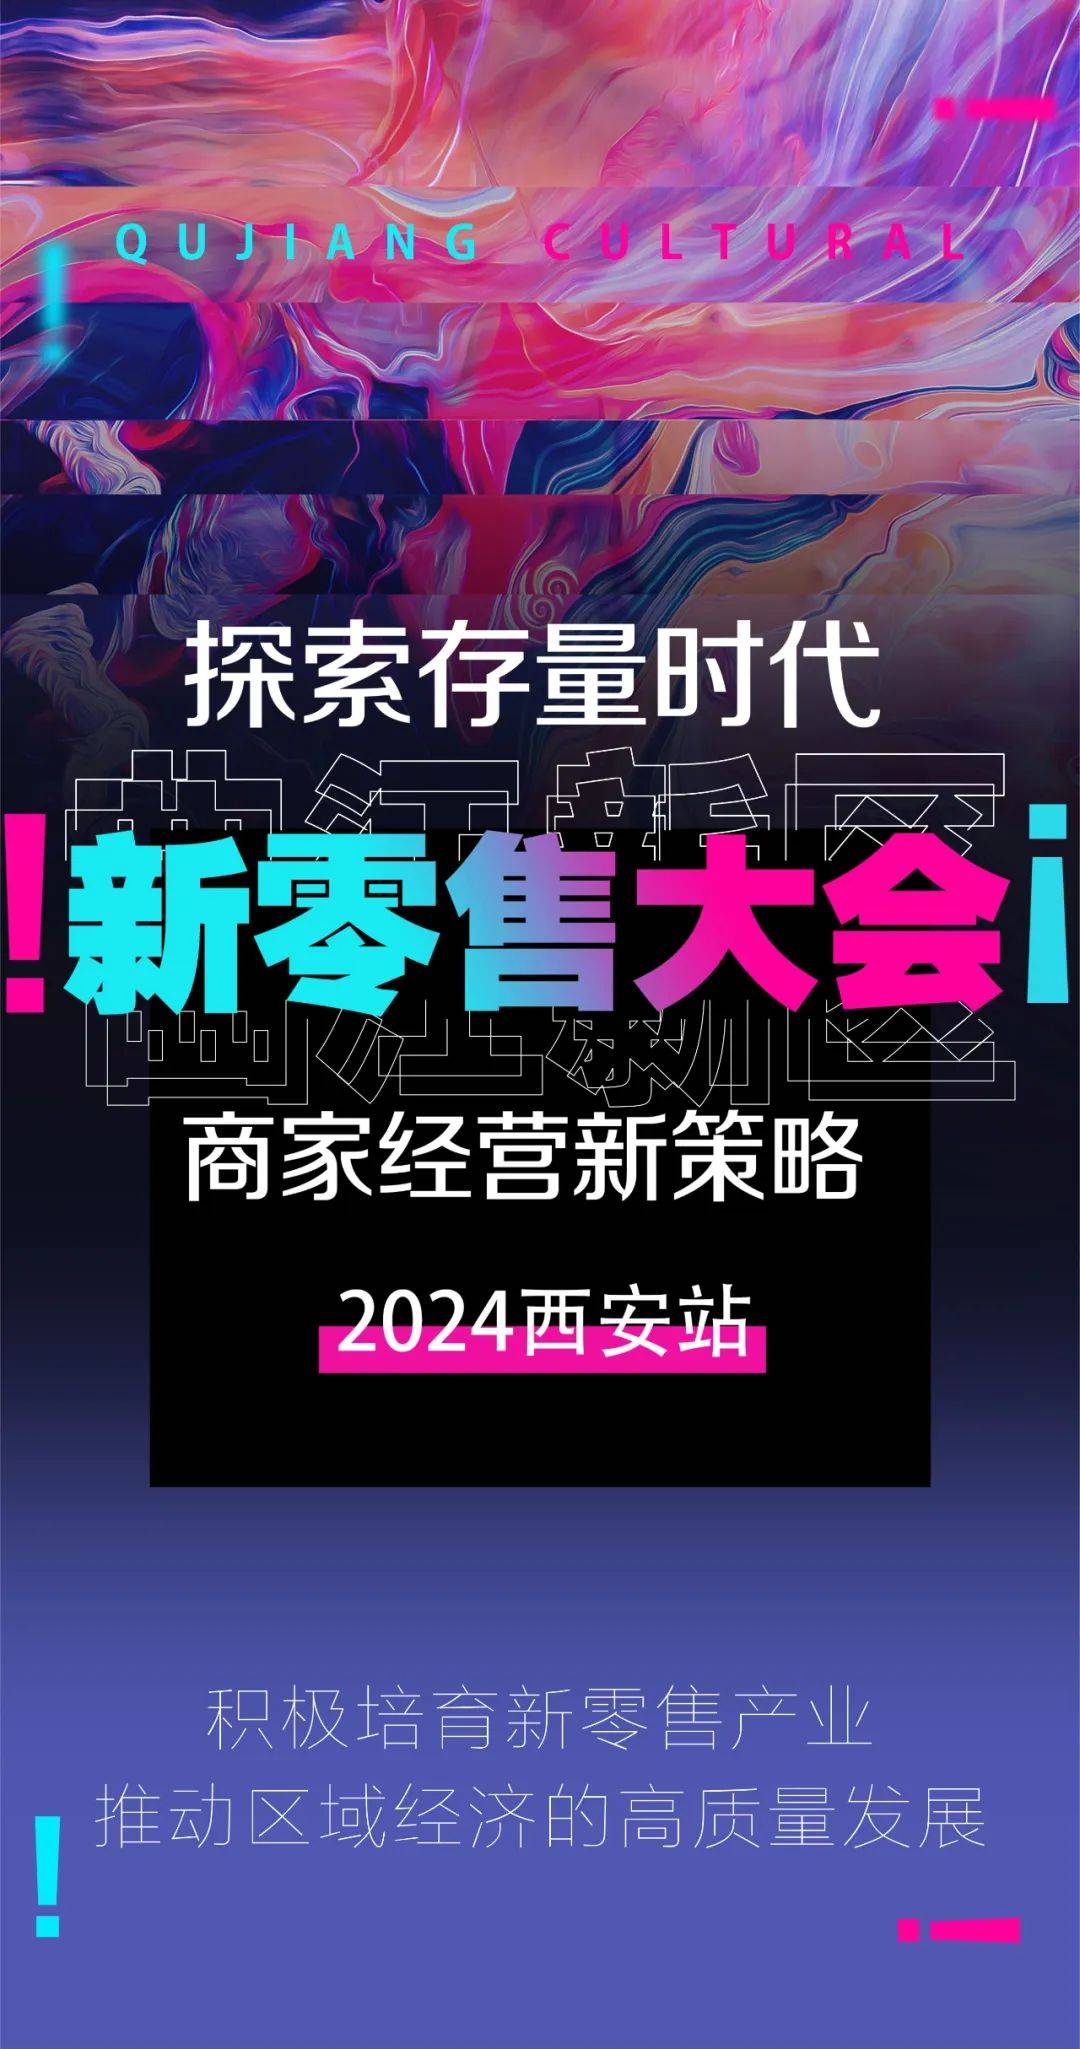 2024西安新零售大会落地曲江新区!